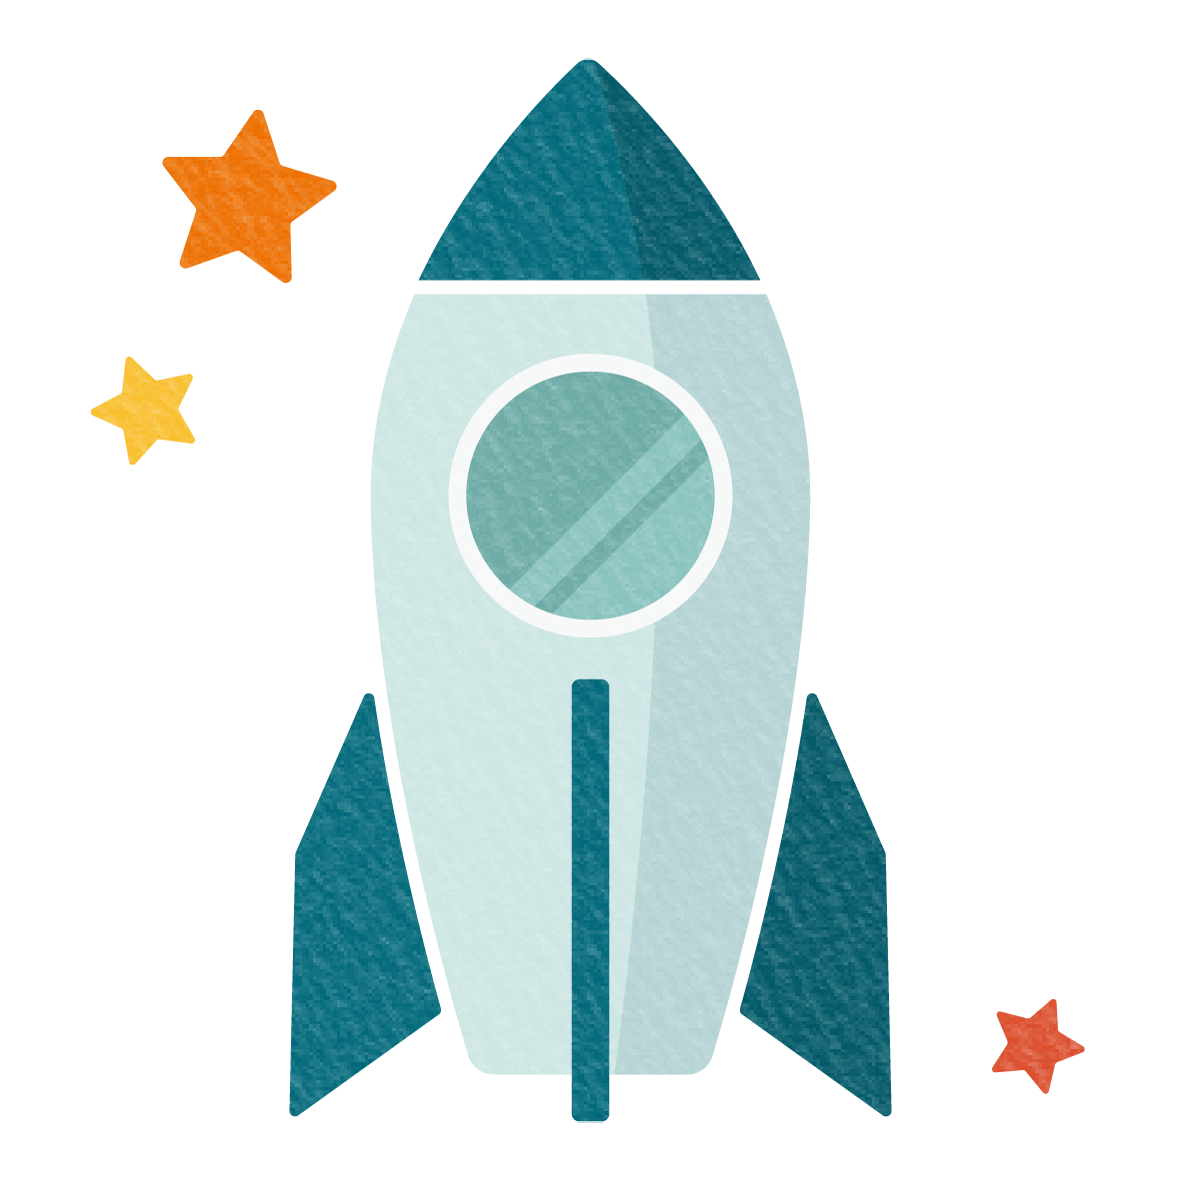 かっこいい青いロケットのイラスト素材です。<br>
ロケットが好きな子供は多いので、幼稚園や保育園などの子供向けの公共施設の飾りとしてもオススメです♪<br>
子供たちのためにお役立てください☆